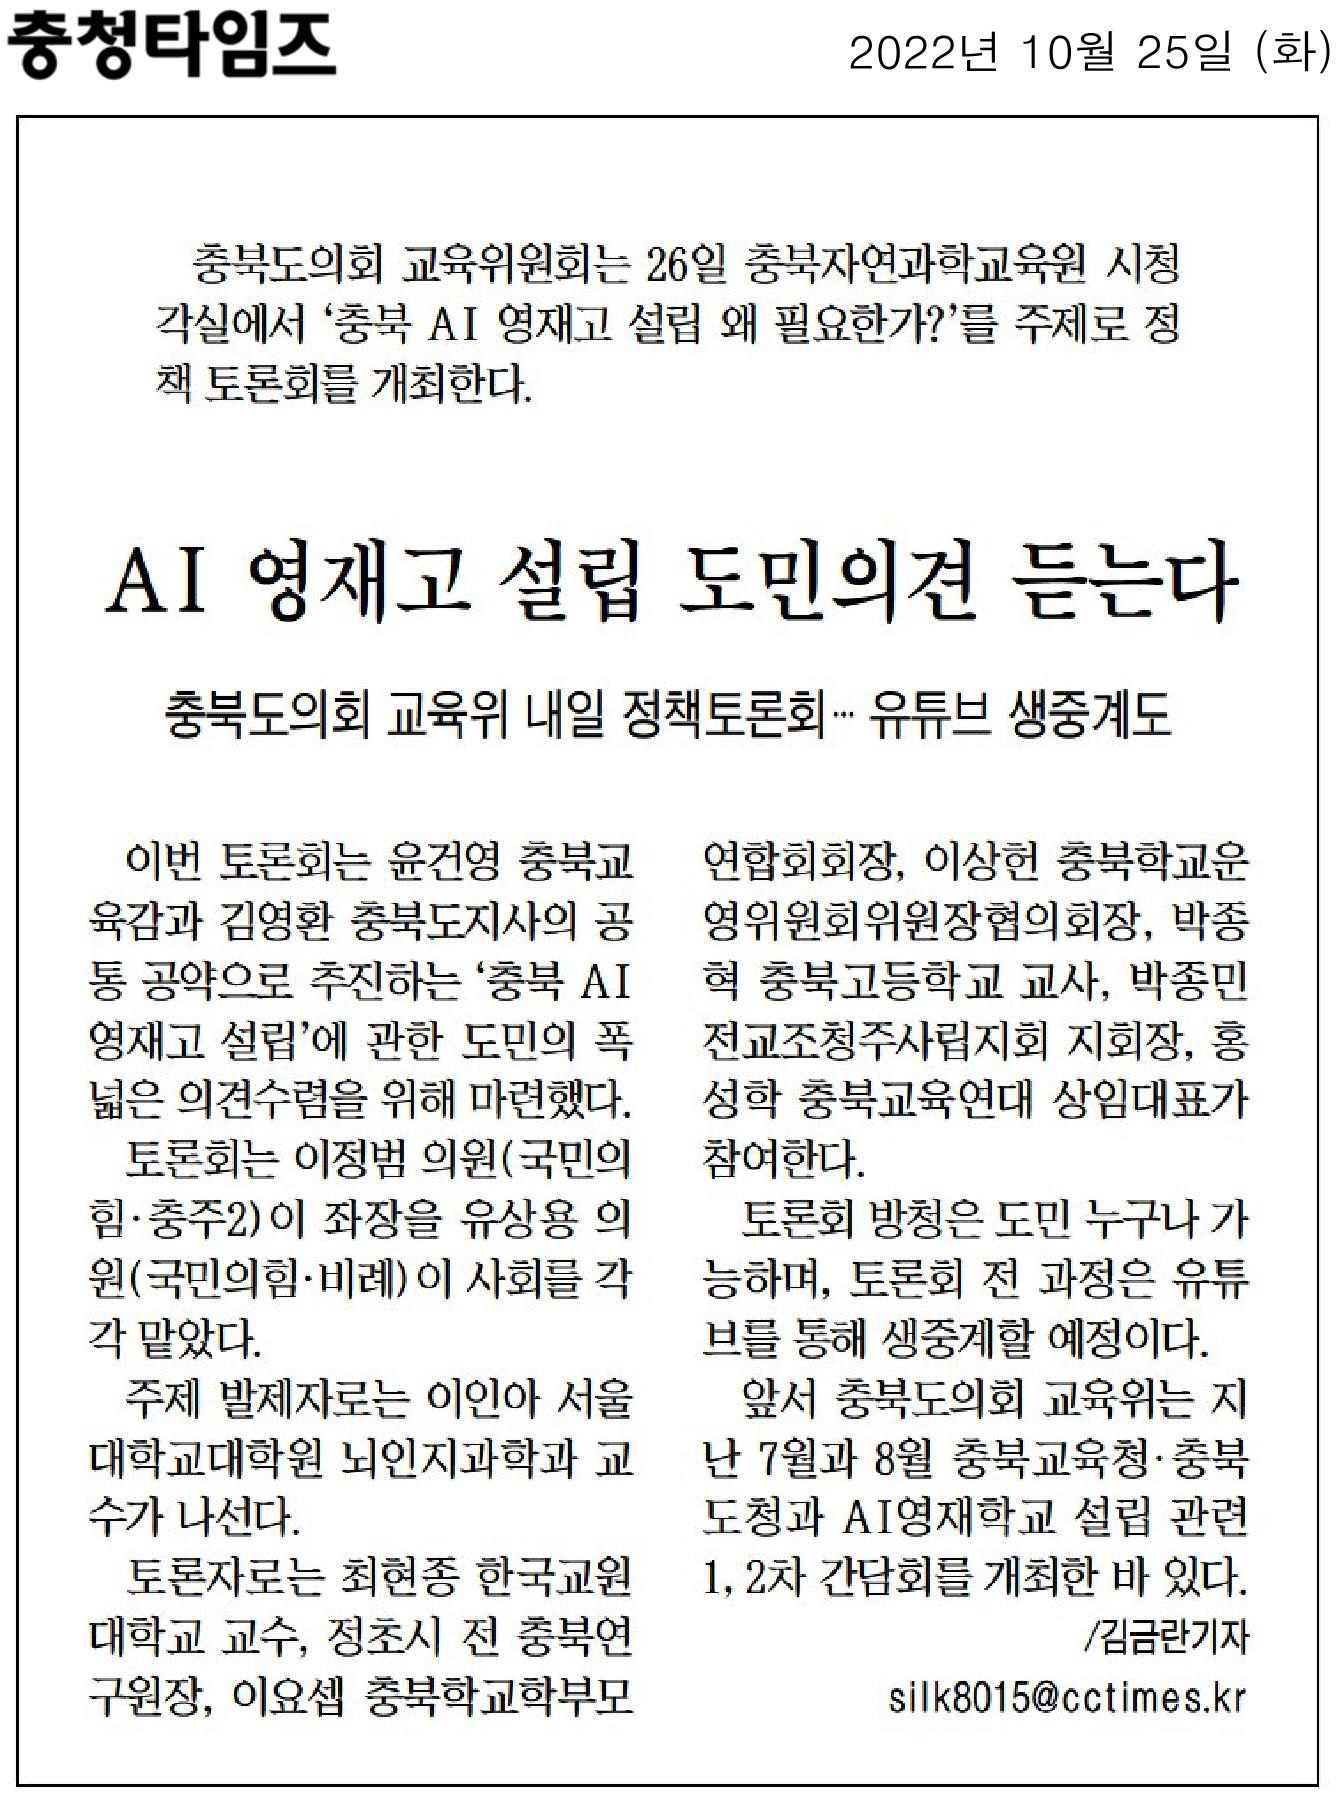 교육위원회, 충북 AI 영재고 설립 정책 토론회 26일 개최  - 1